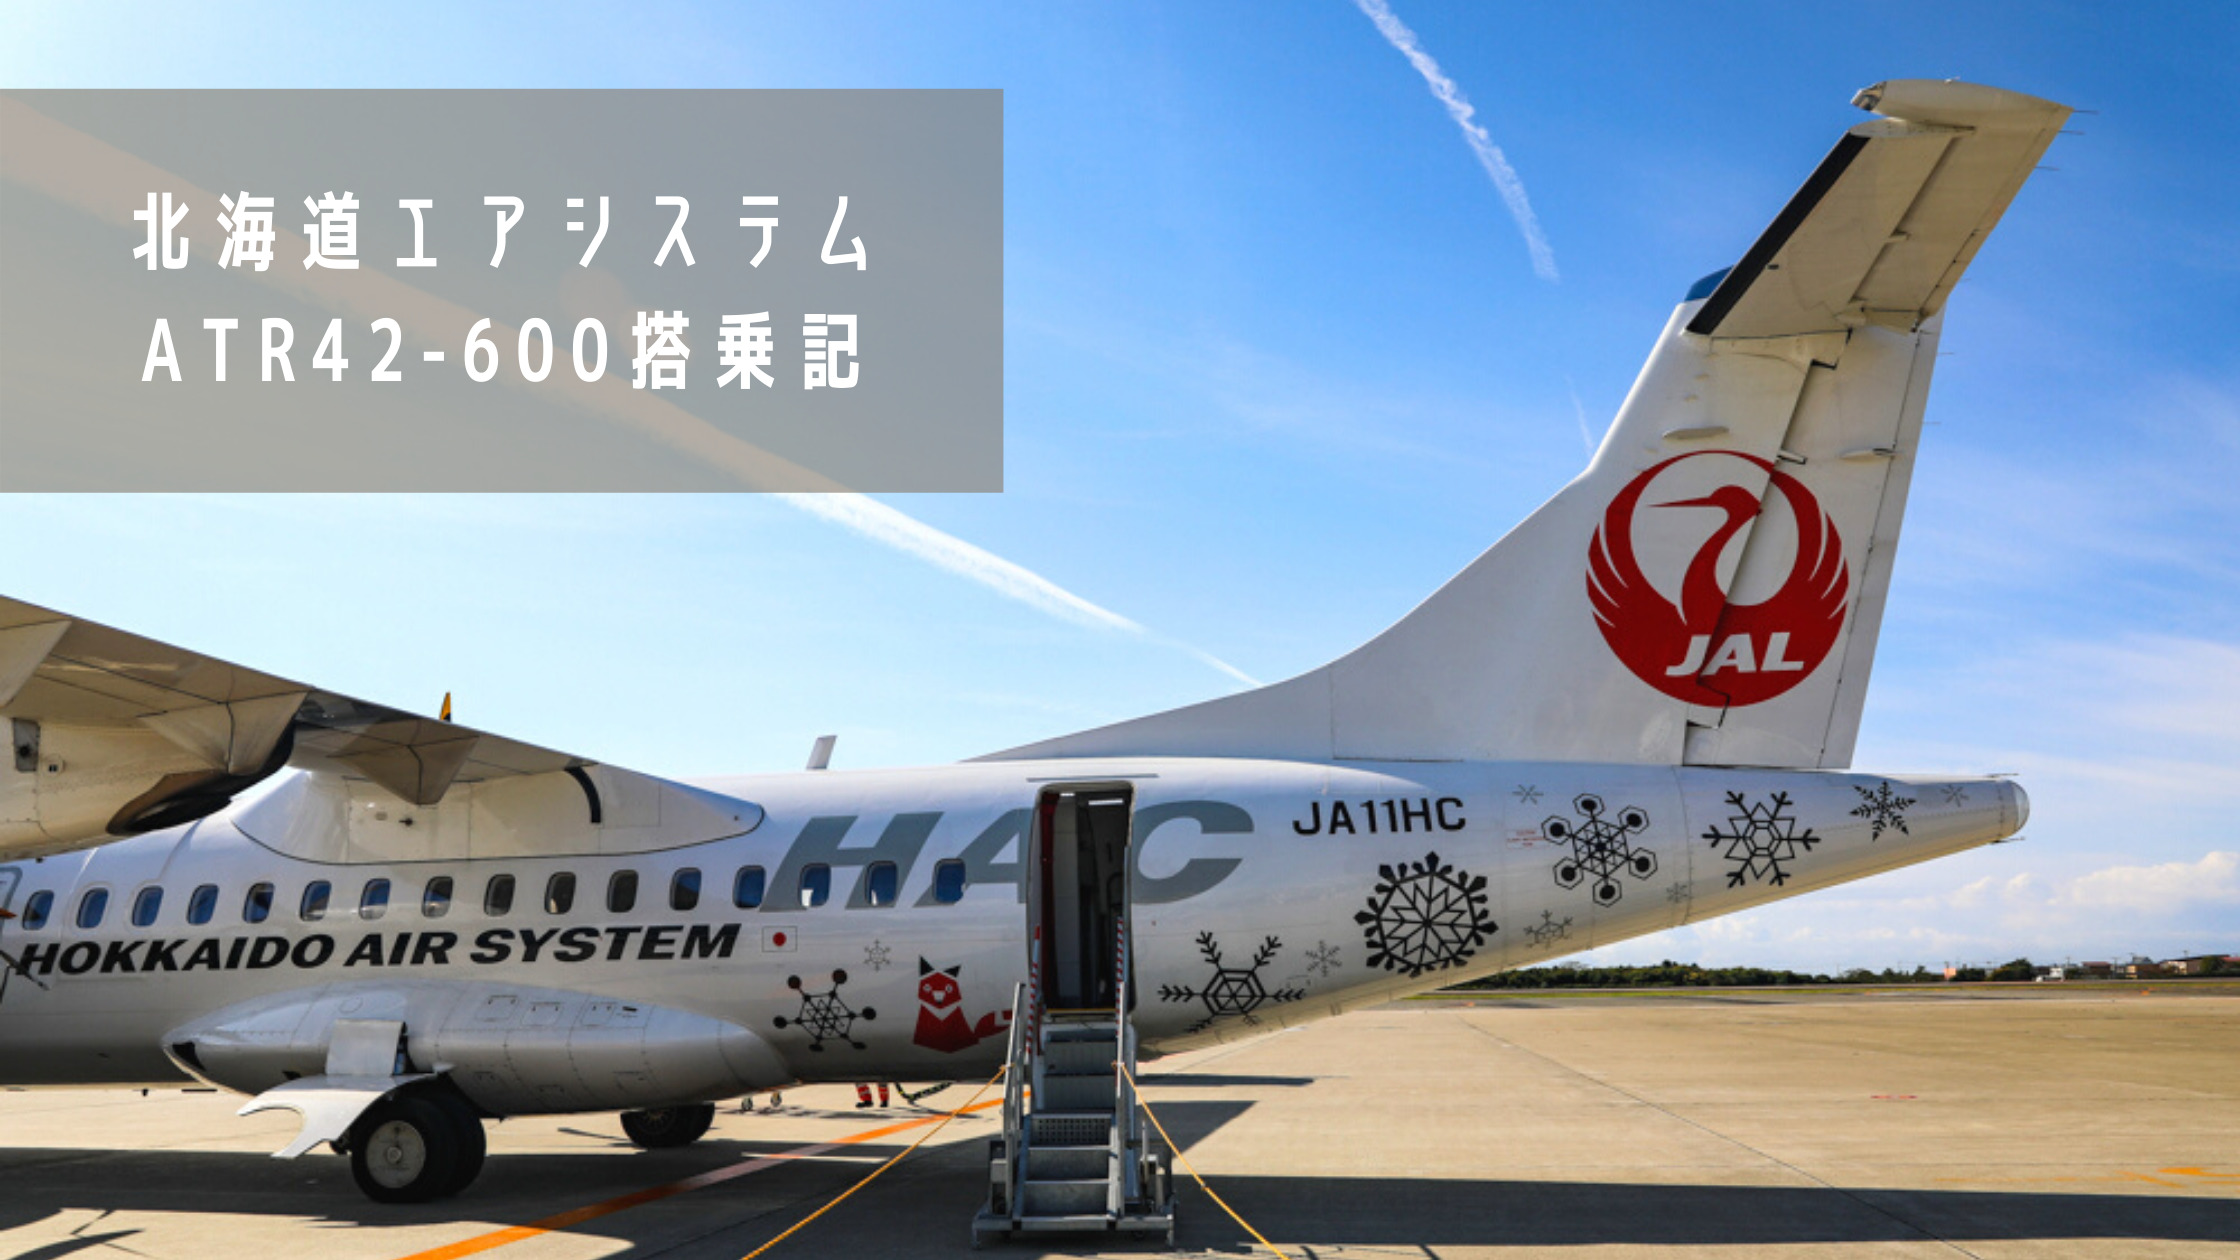 丘珠 函館 北海道エアシステム Nth Atr42 600搭乗記 最新鋭機材で遊覧飛行気分 シテイリョウコウ